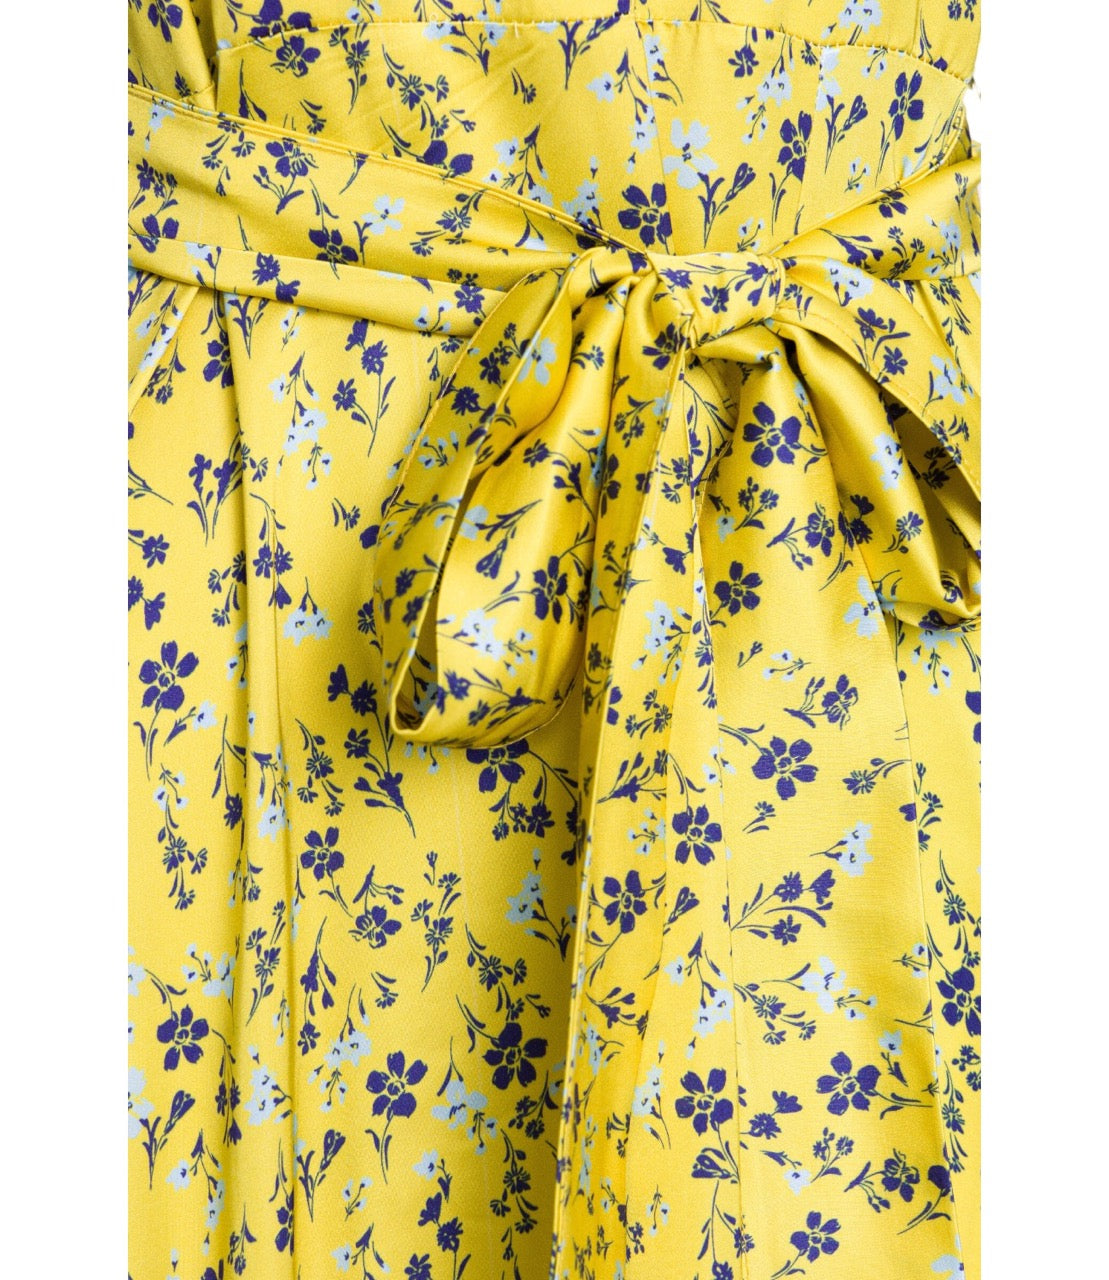 Saiph floral yellow print long dress